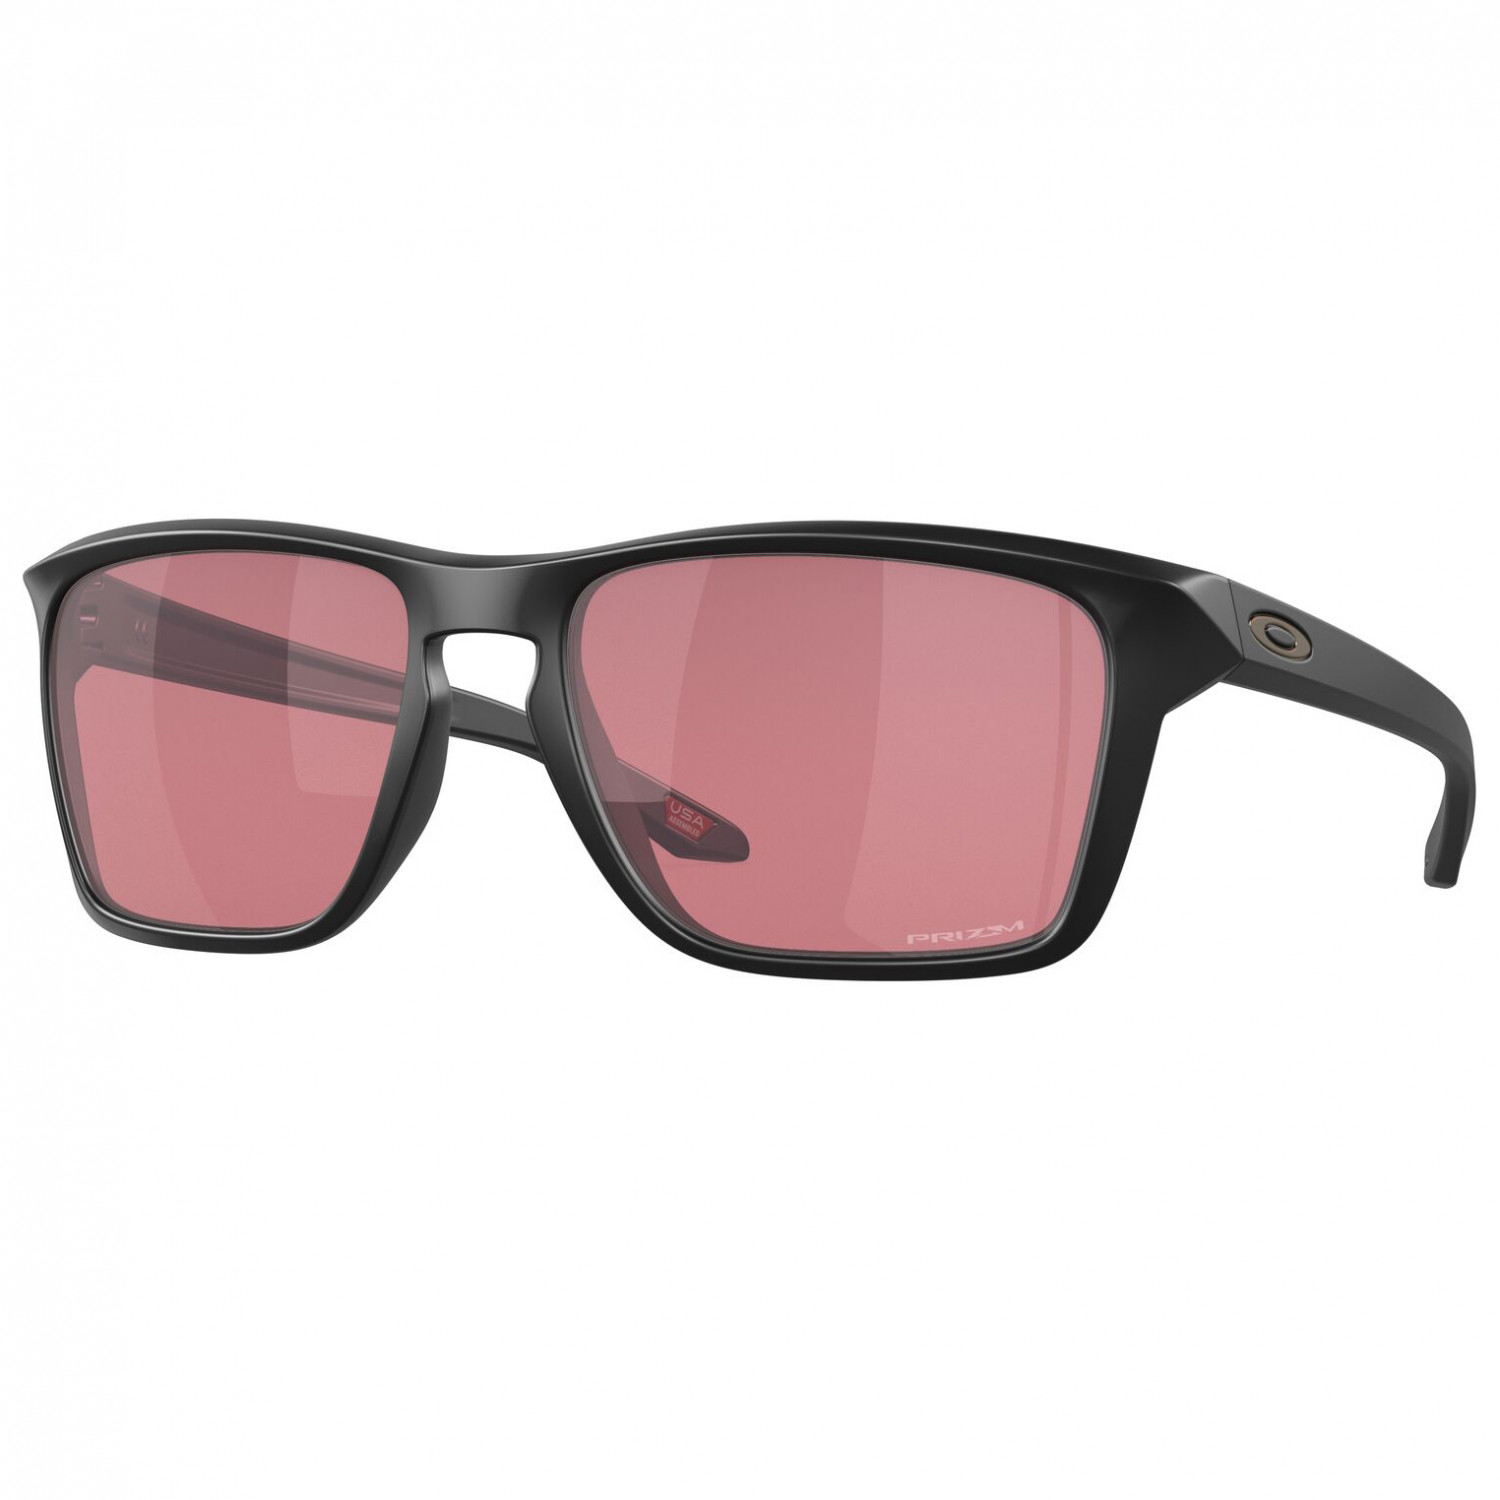 солнцезащитные очки oakley sylas prizm s2 vlt 22% матовый черный Солнцезащитные очки Oakley Sylas Prizm S2 (VLT 22%), матовый черный